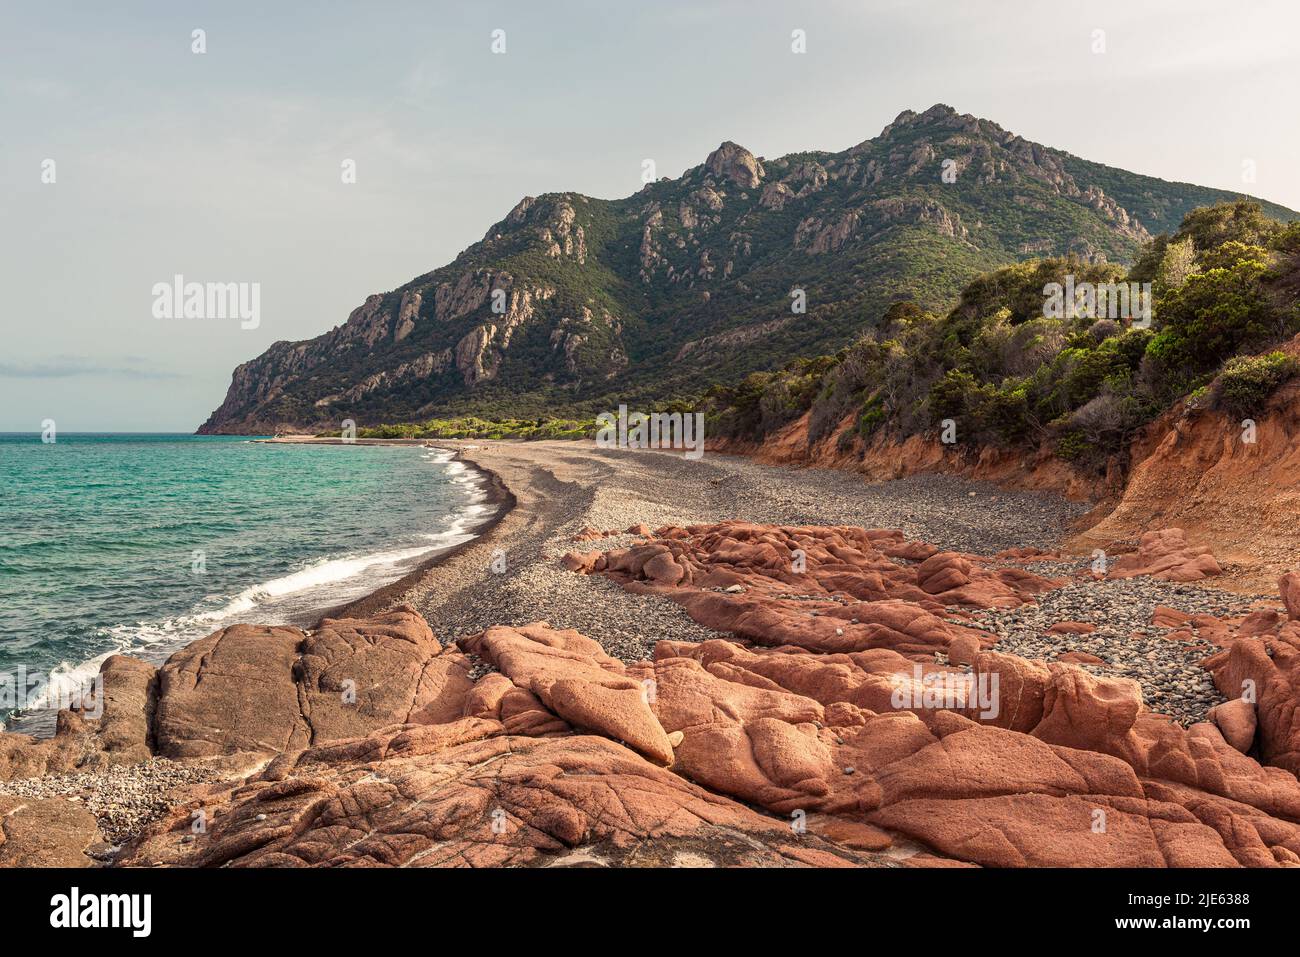 La playa de guijarros gris Cocorocci enmarcada por rocas de pórfido rojo y los bosques alrededor de Monte Cartucceddu en la costa este de Cerdeña, Ogliastra, Italia Foto de stock